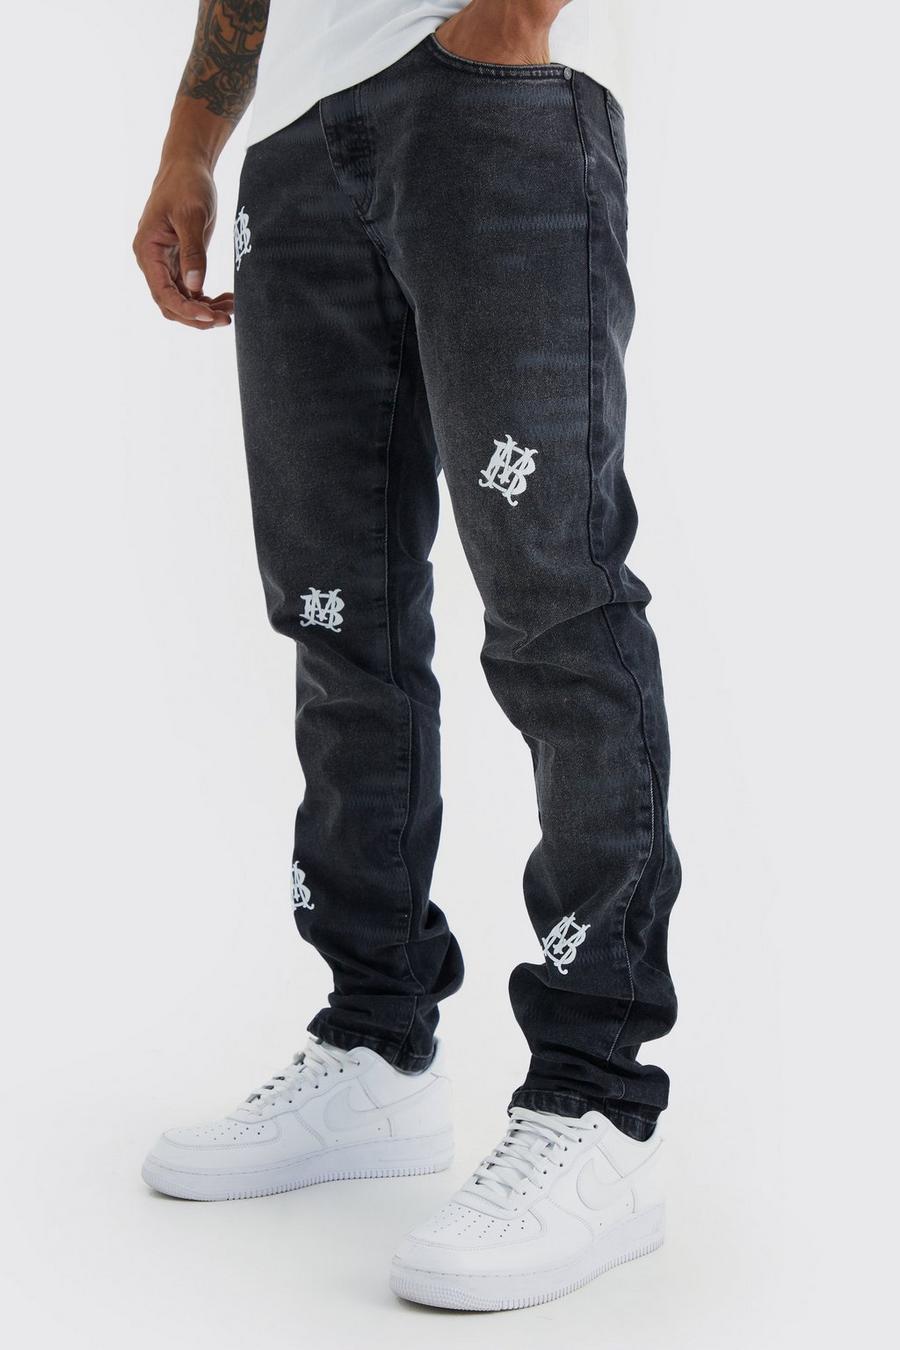 Jeans Slim Fit in denim rigido con ricami e pieghe sul fondo, Washed black